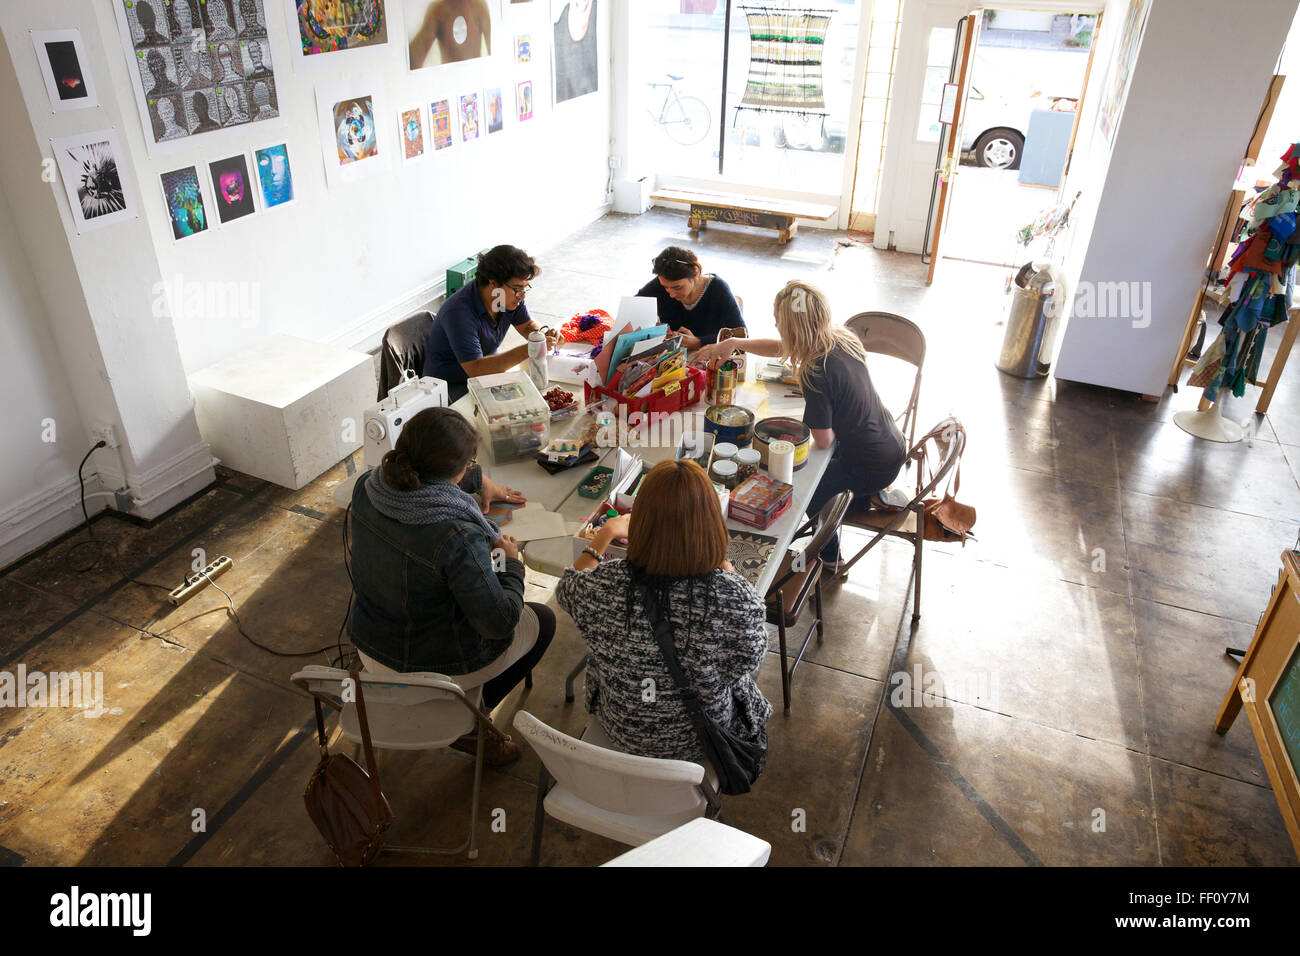 Cinq personnes assis autour d'une table avec des fournitures d'artisanat dans un espace ensoleillé lumineux, chacun travaillant sur son projet tranquillement. Banque D'Images